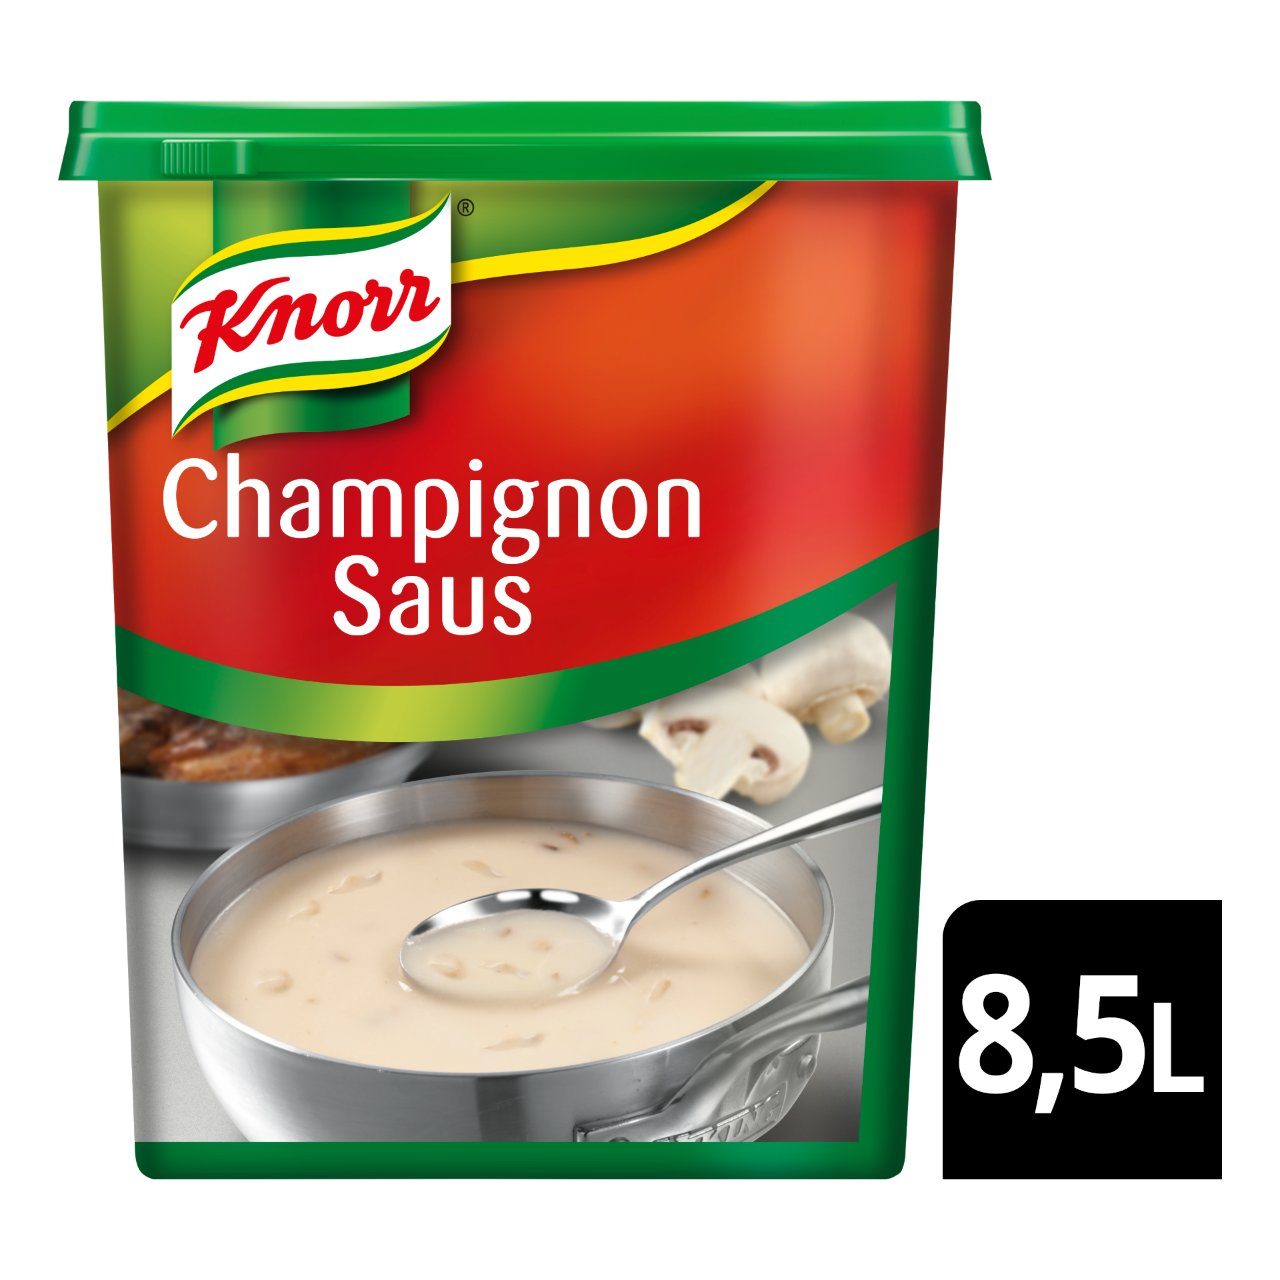 Champignon saus